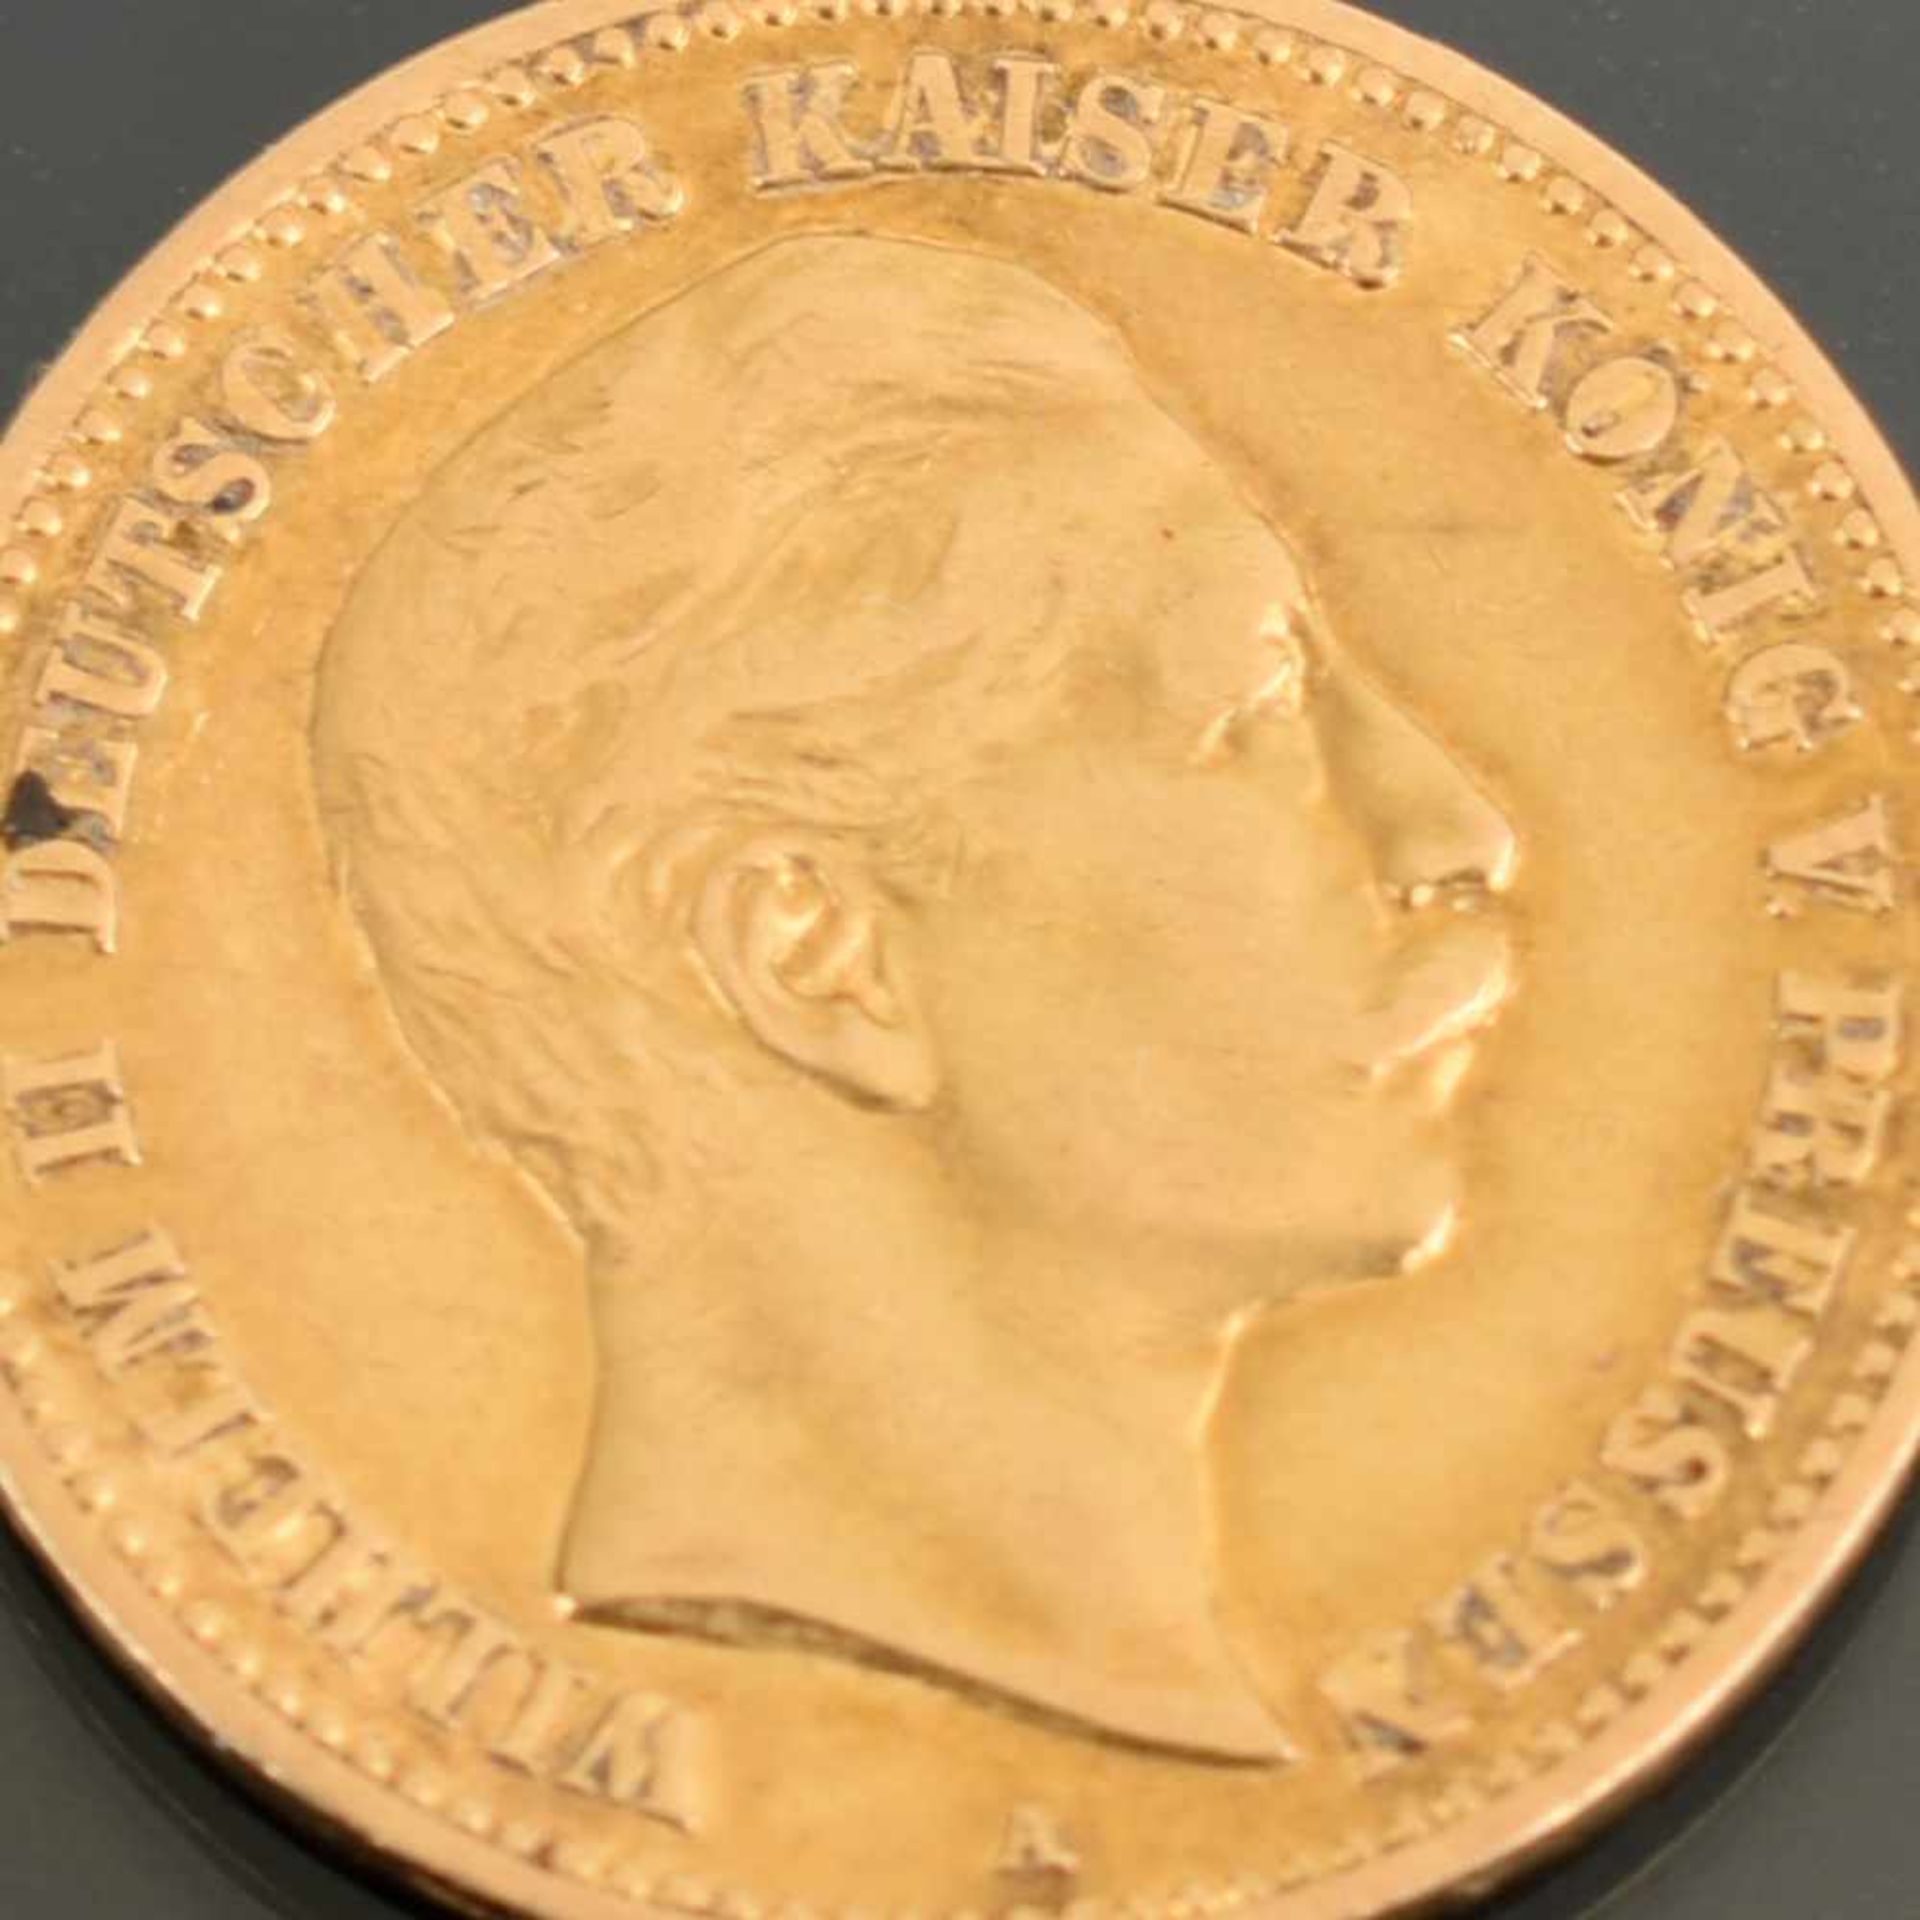 Goldmünze Kaiserreich - Preußen 1893 10 Mark in Gold, 900/1000, 3,98 g, av. Wilhelm II. Deutscher